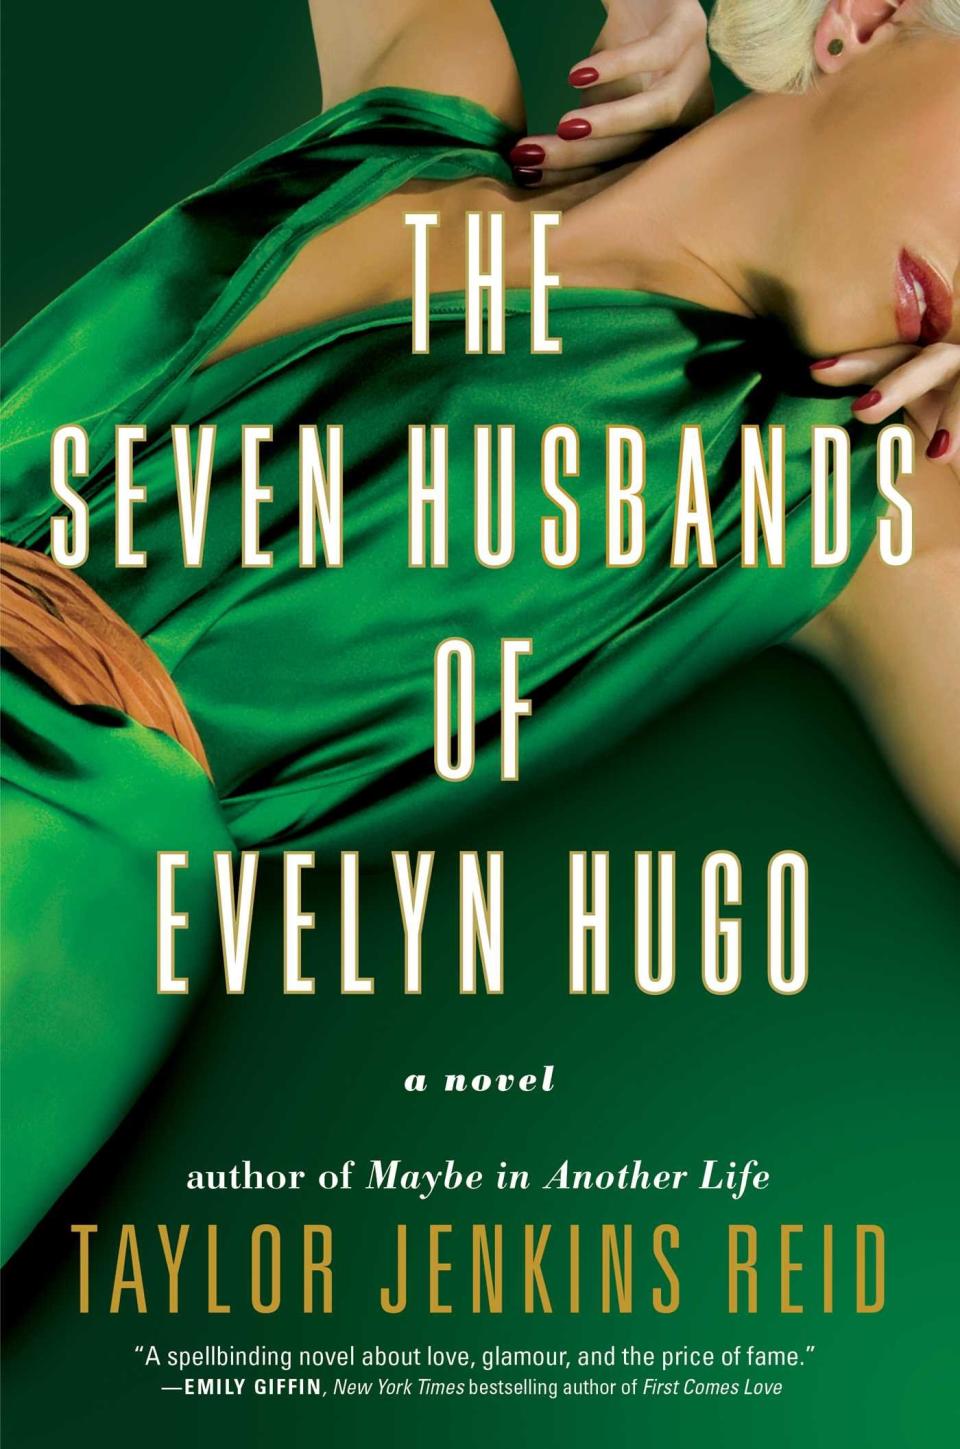 "The Seven Husbands of Evelyn Hugo" by Taylor Jenkins Reid